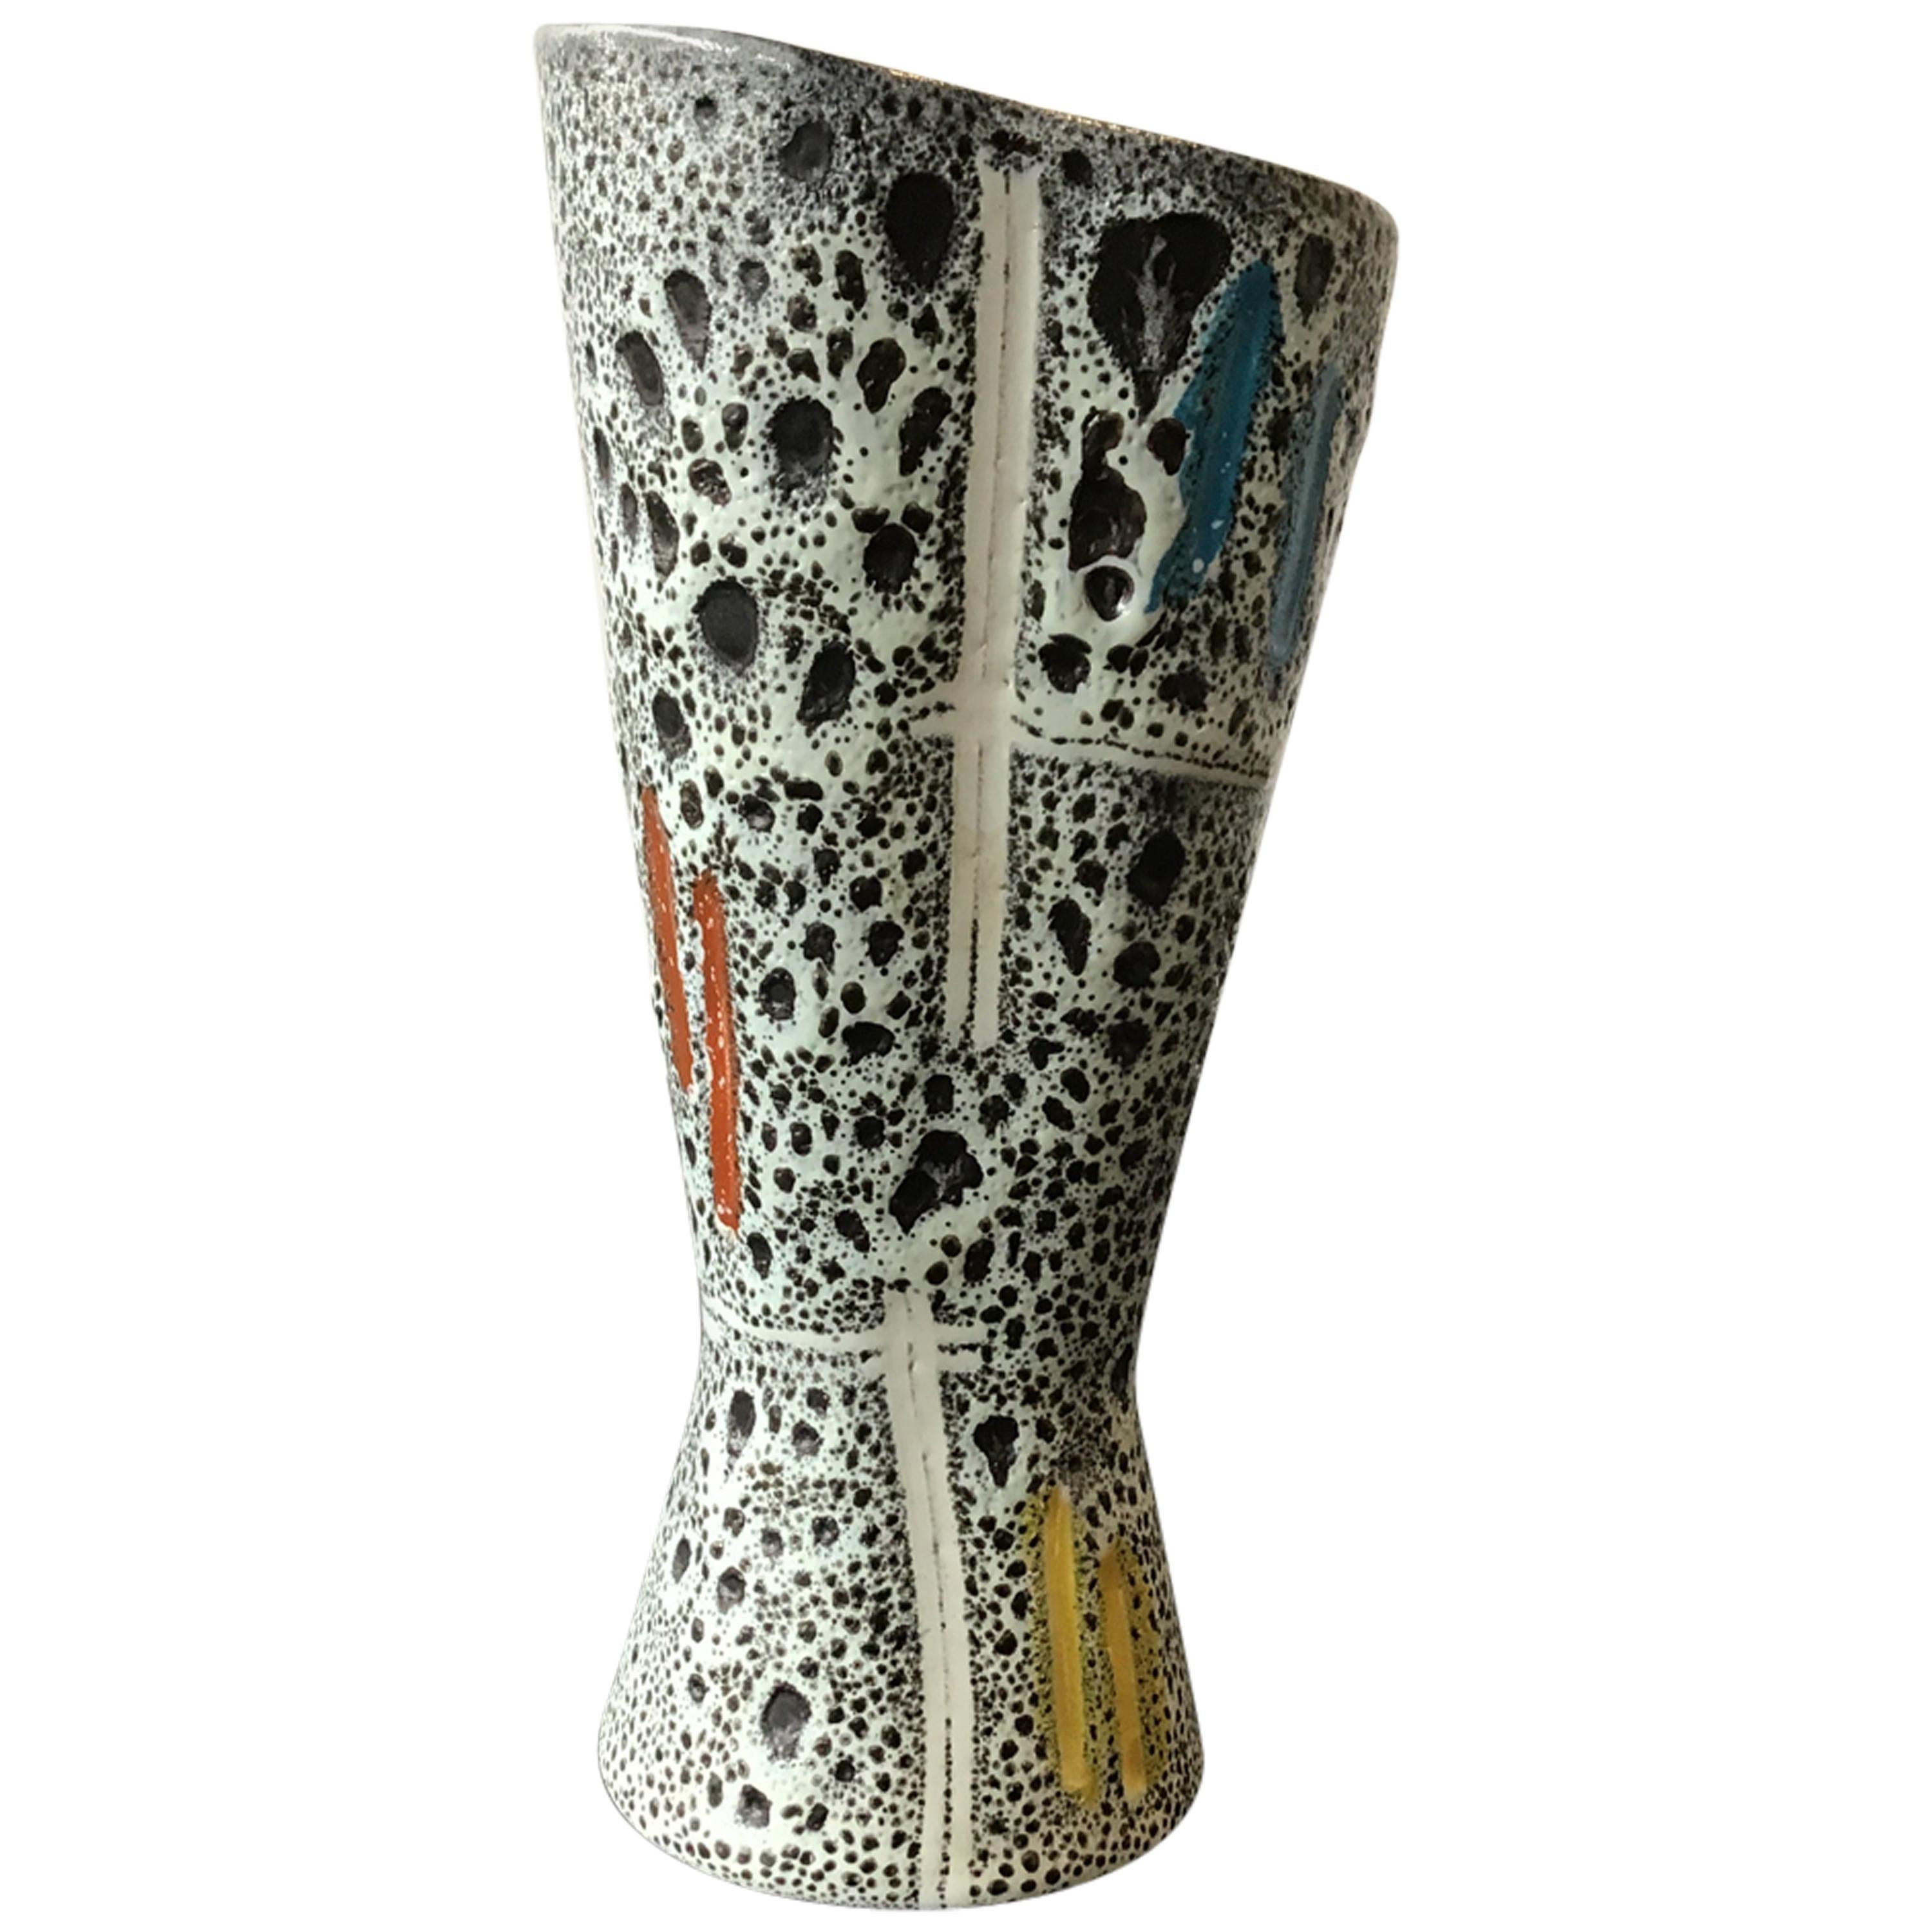 1960s German Ceramic Vase